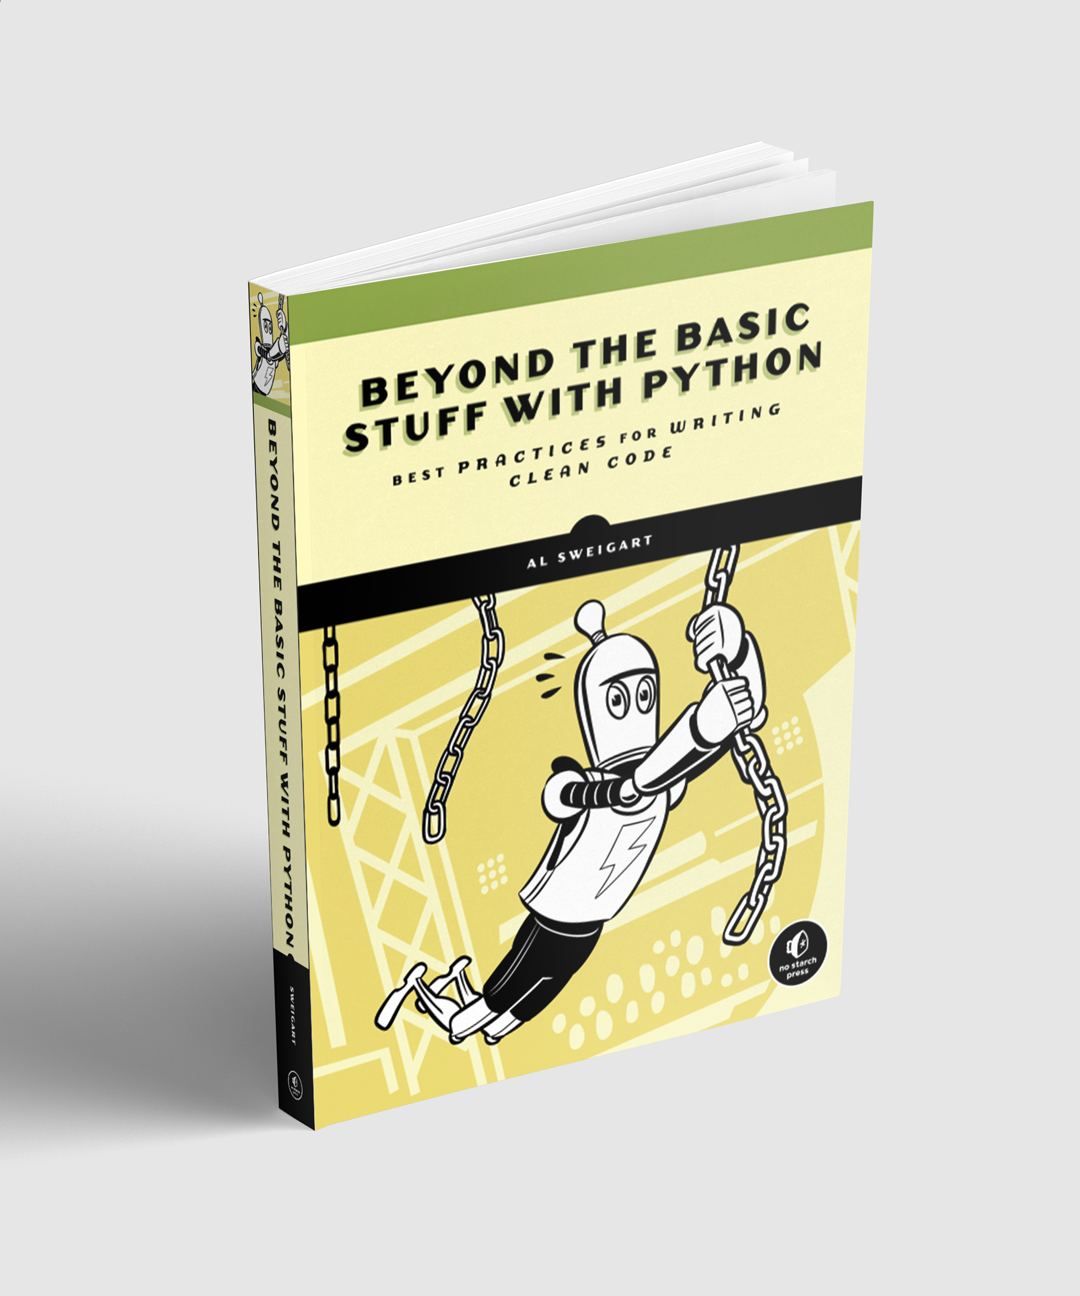 Beyond the Basic Stuff with Python Image